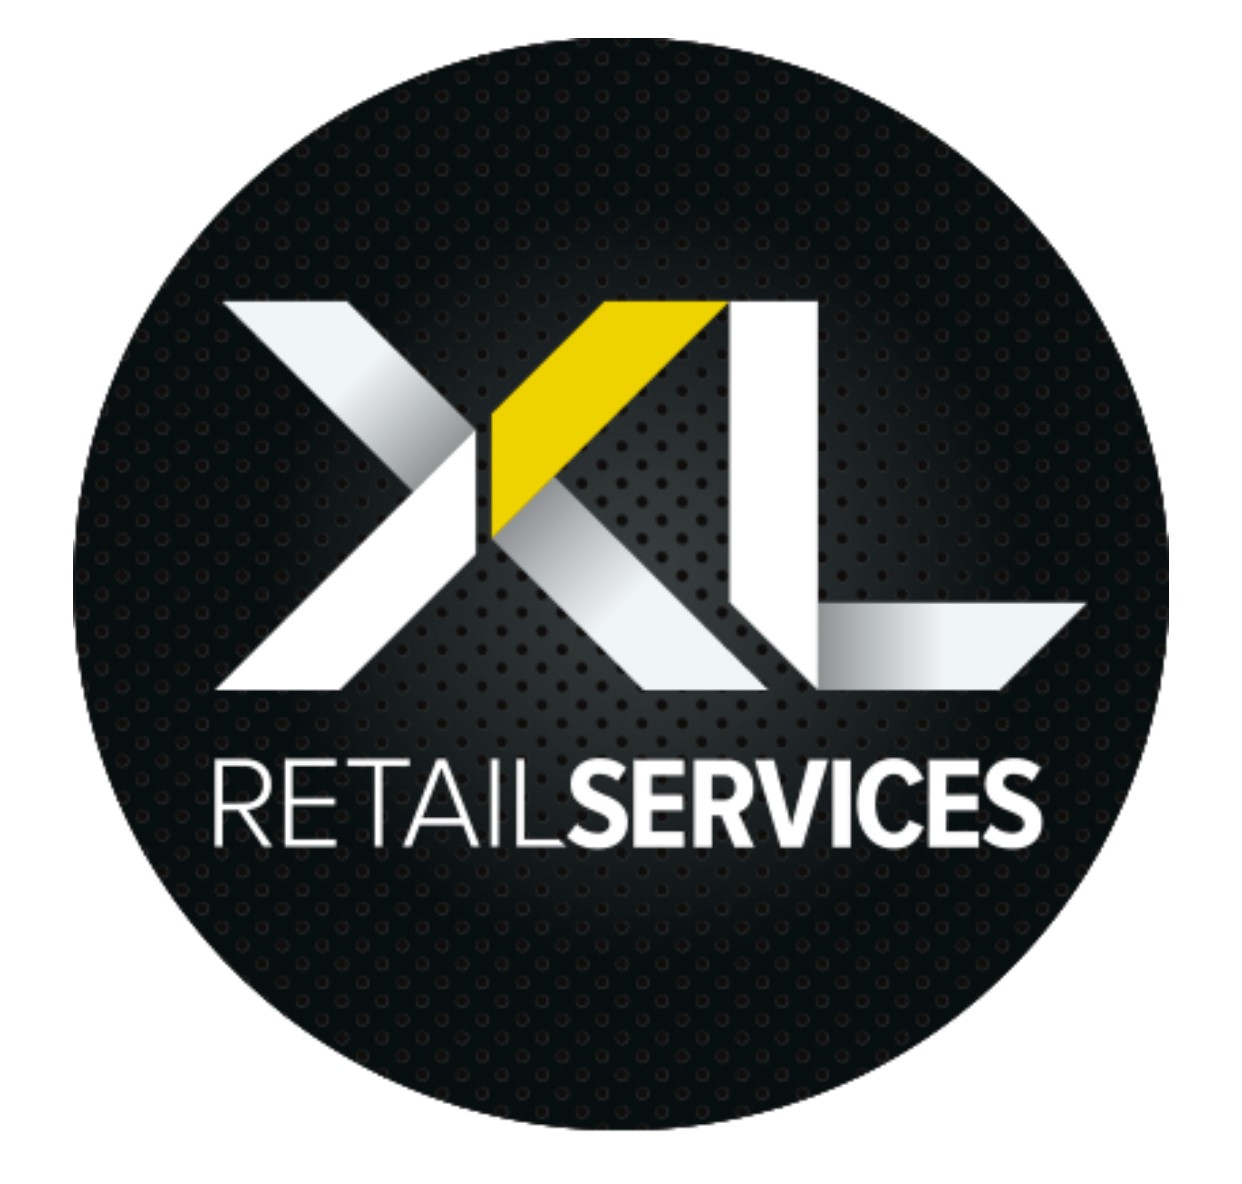 Liquor Sites Inspection Report - XL Retail Services - Version 1.0